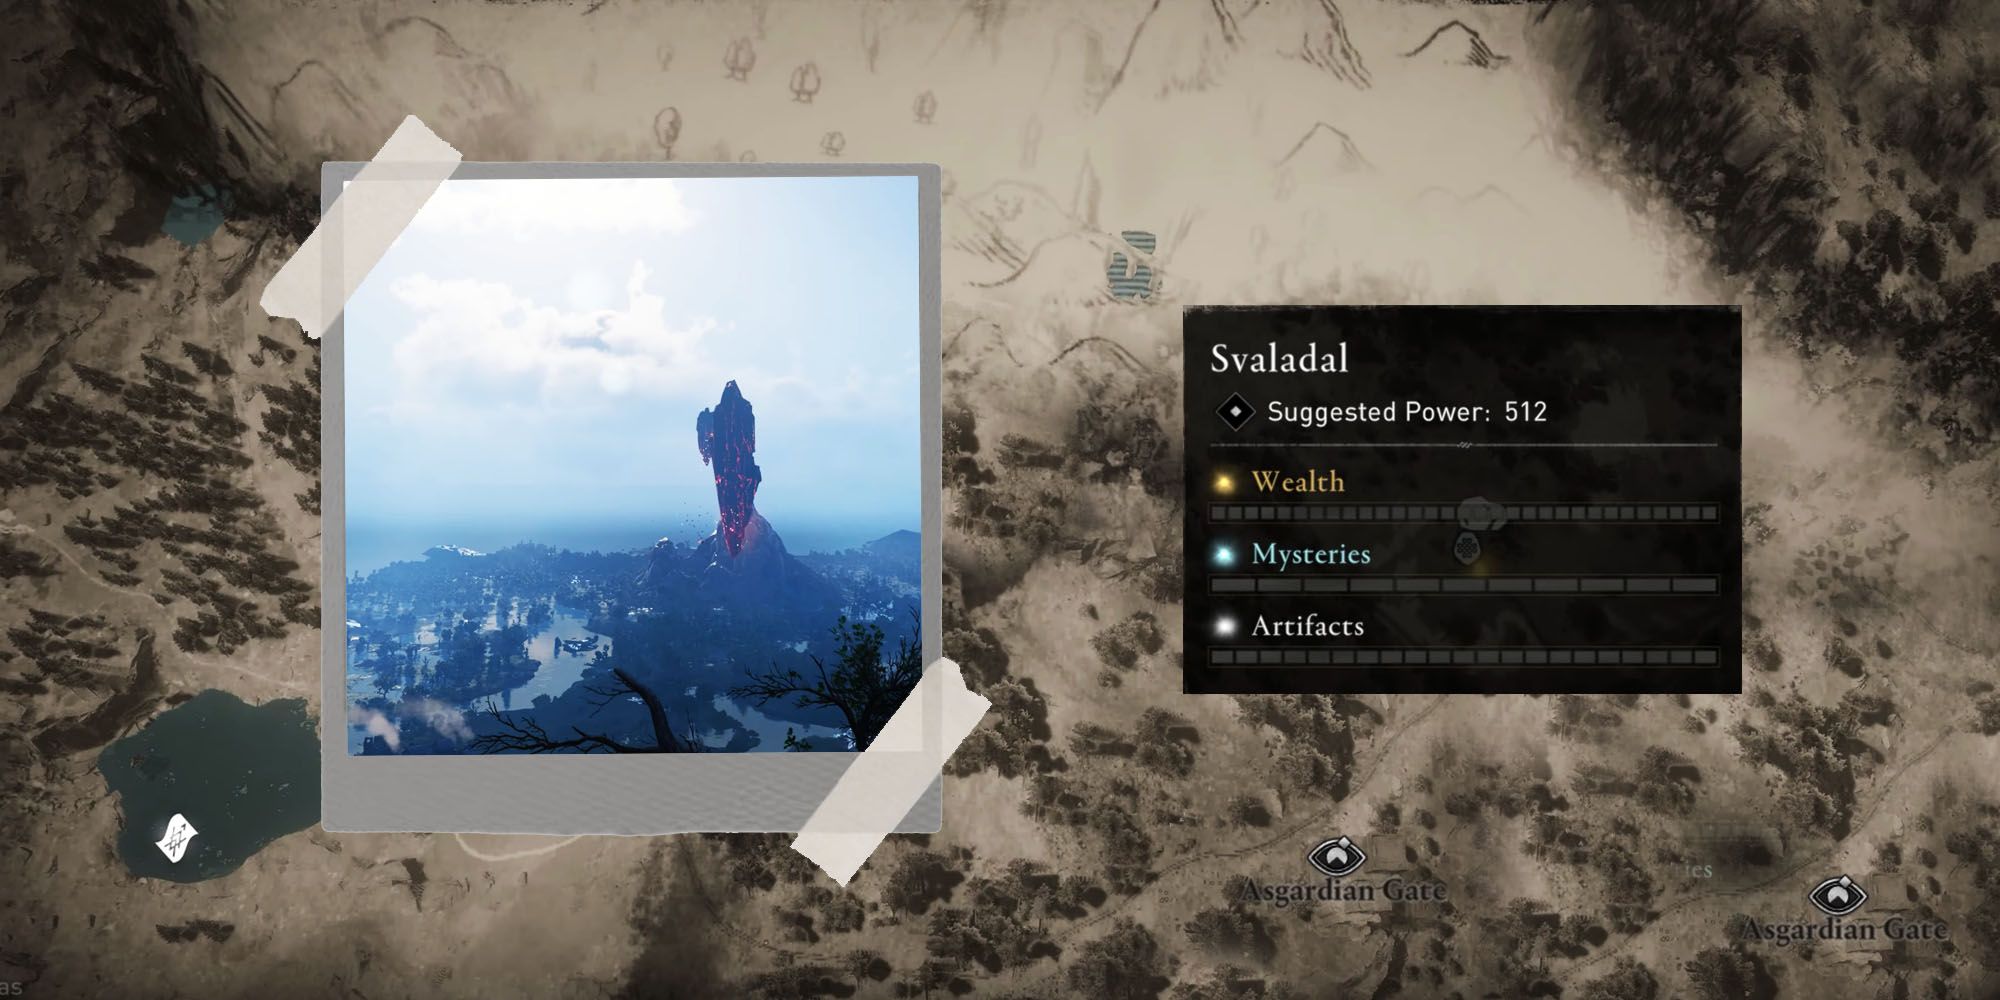 Assassin's Creed Valhalla: Dawn of Ragnarok map showing Svaladal region